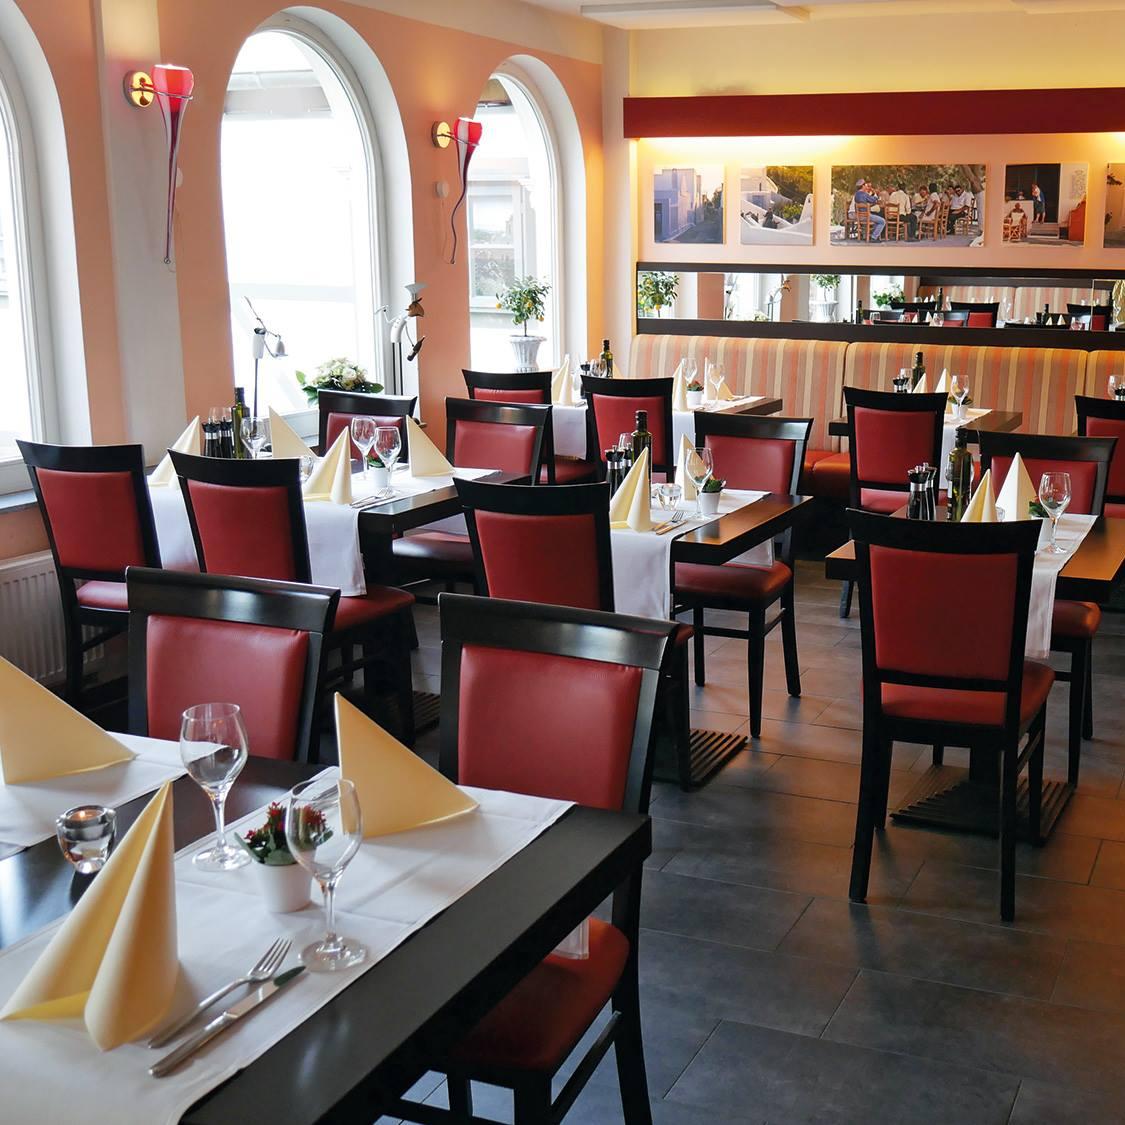 Restaurant "Bacchus 1 in Arnum" in  Hemmingen